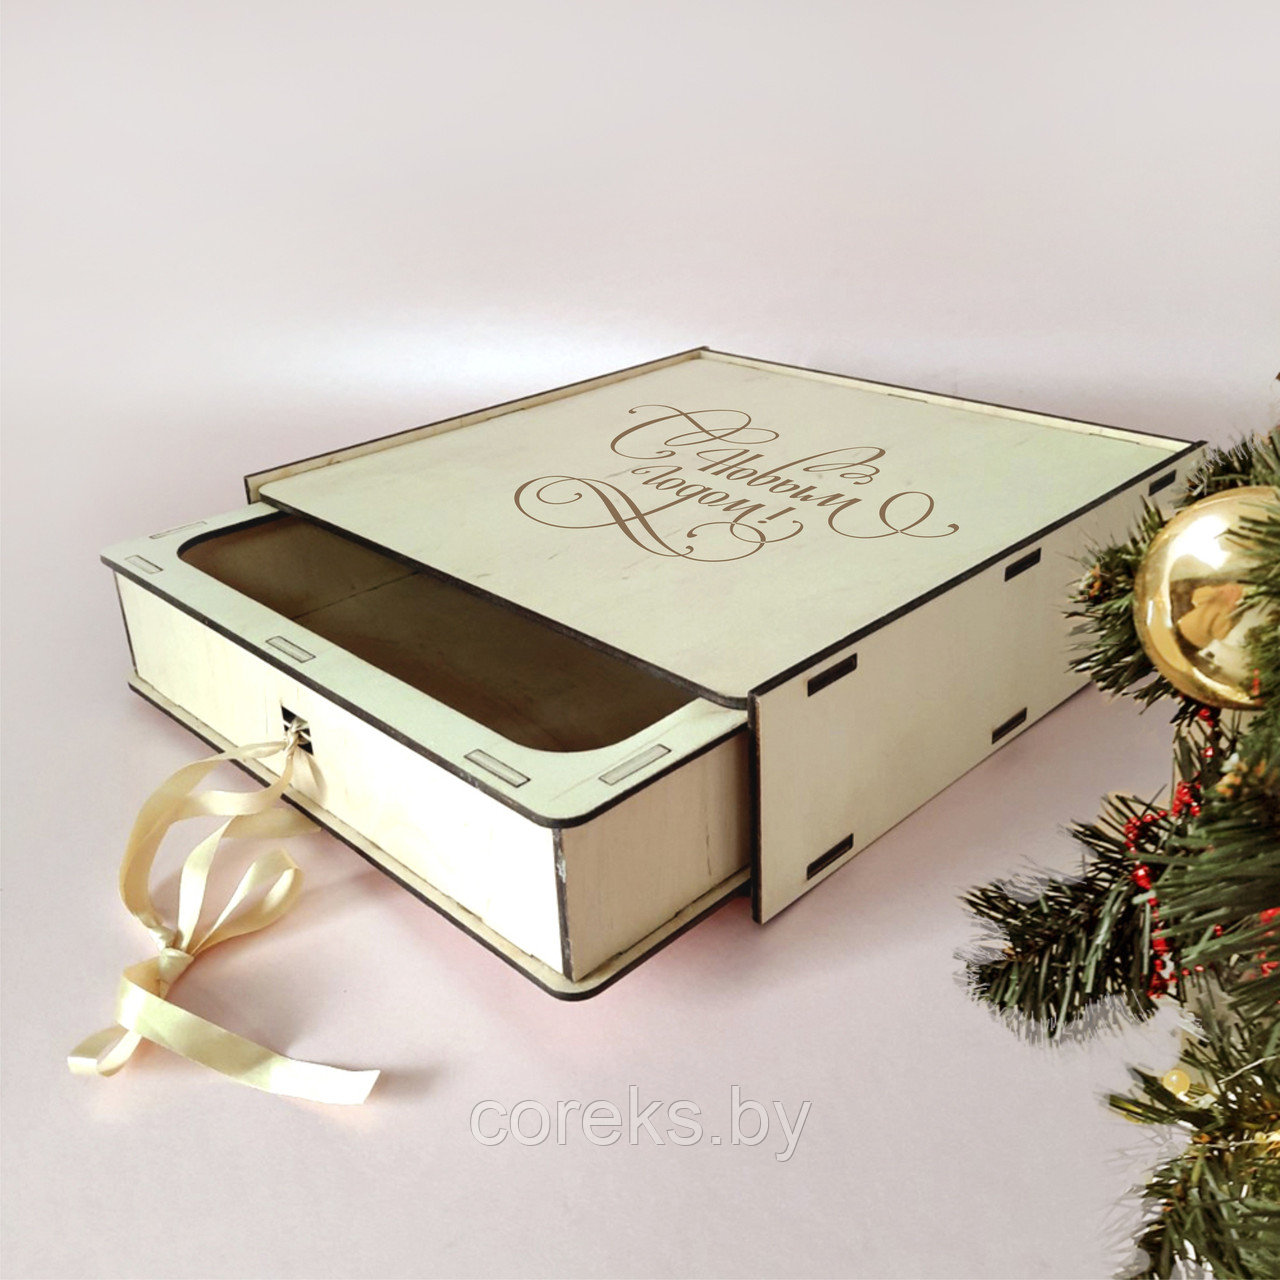 Подарочная деревянная коробка "С Новым годом" (размер 30*20 см)